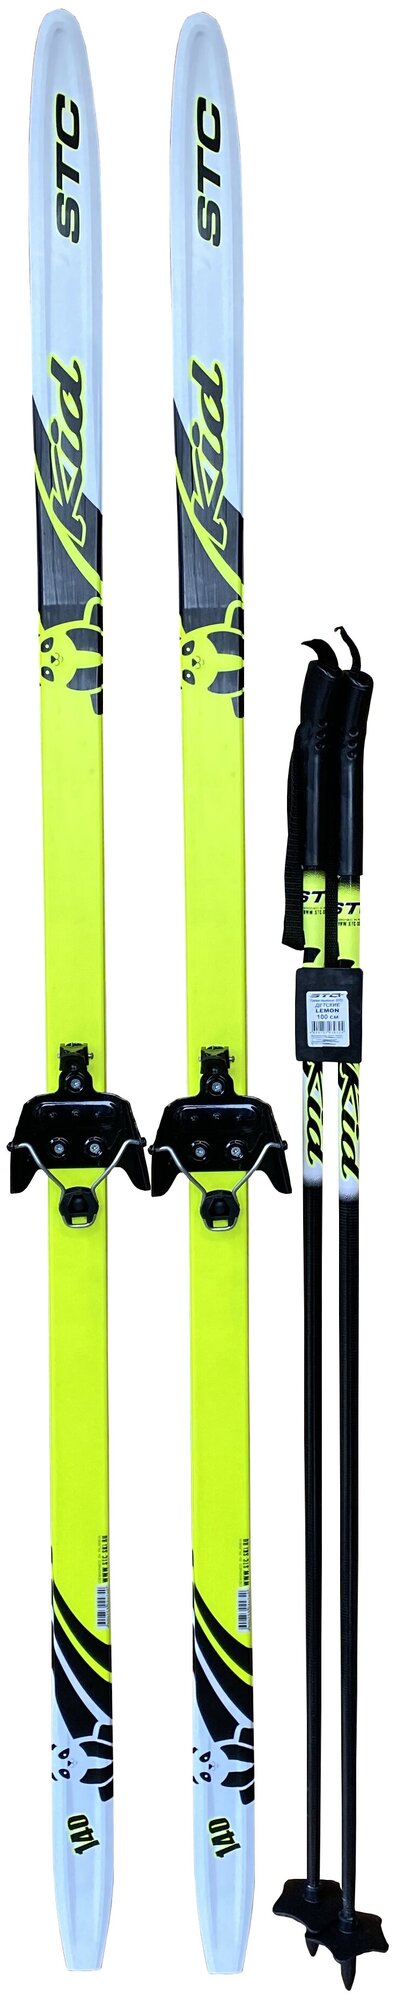 Лыжный комплект STC Kids Lemon 140см STEP NNN (лыжи + палки(100) + крепления)